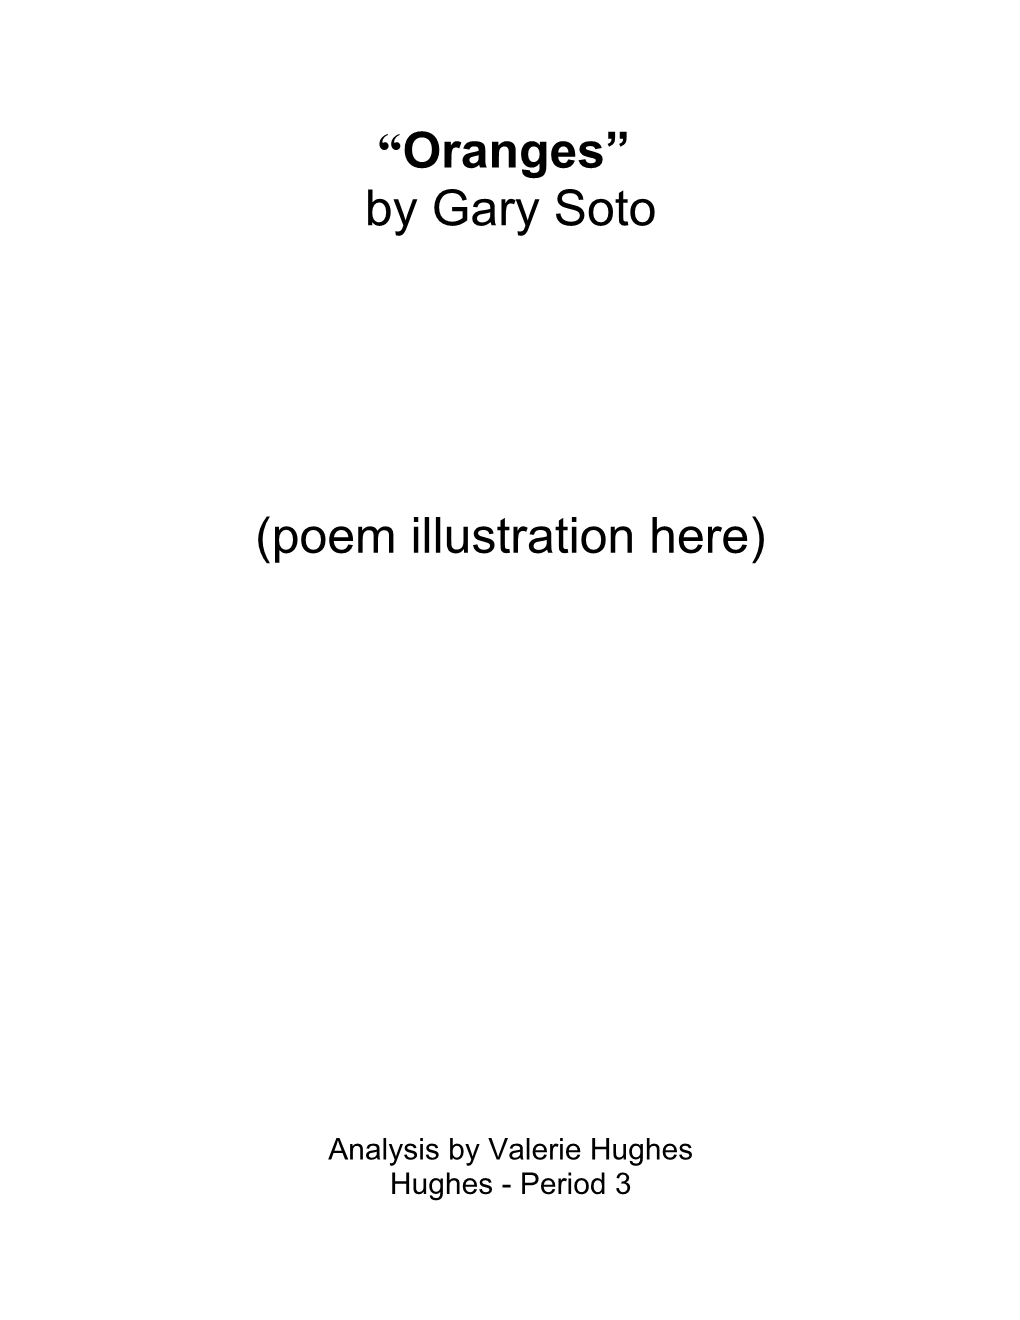 Poem Illustration Here